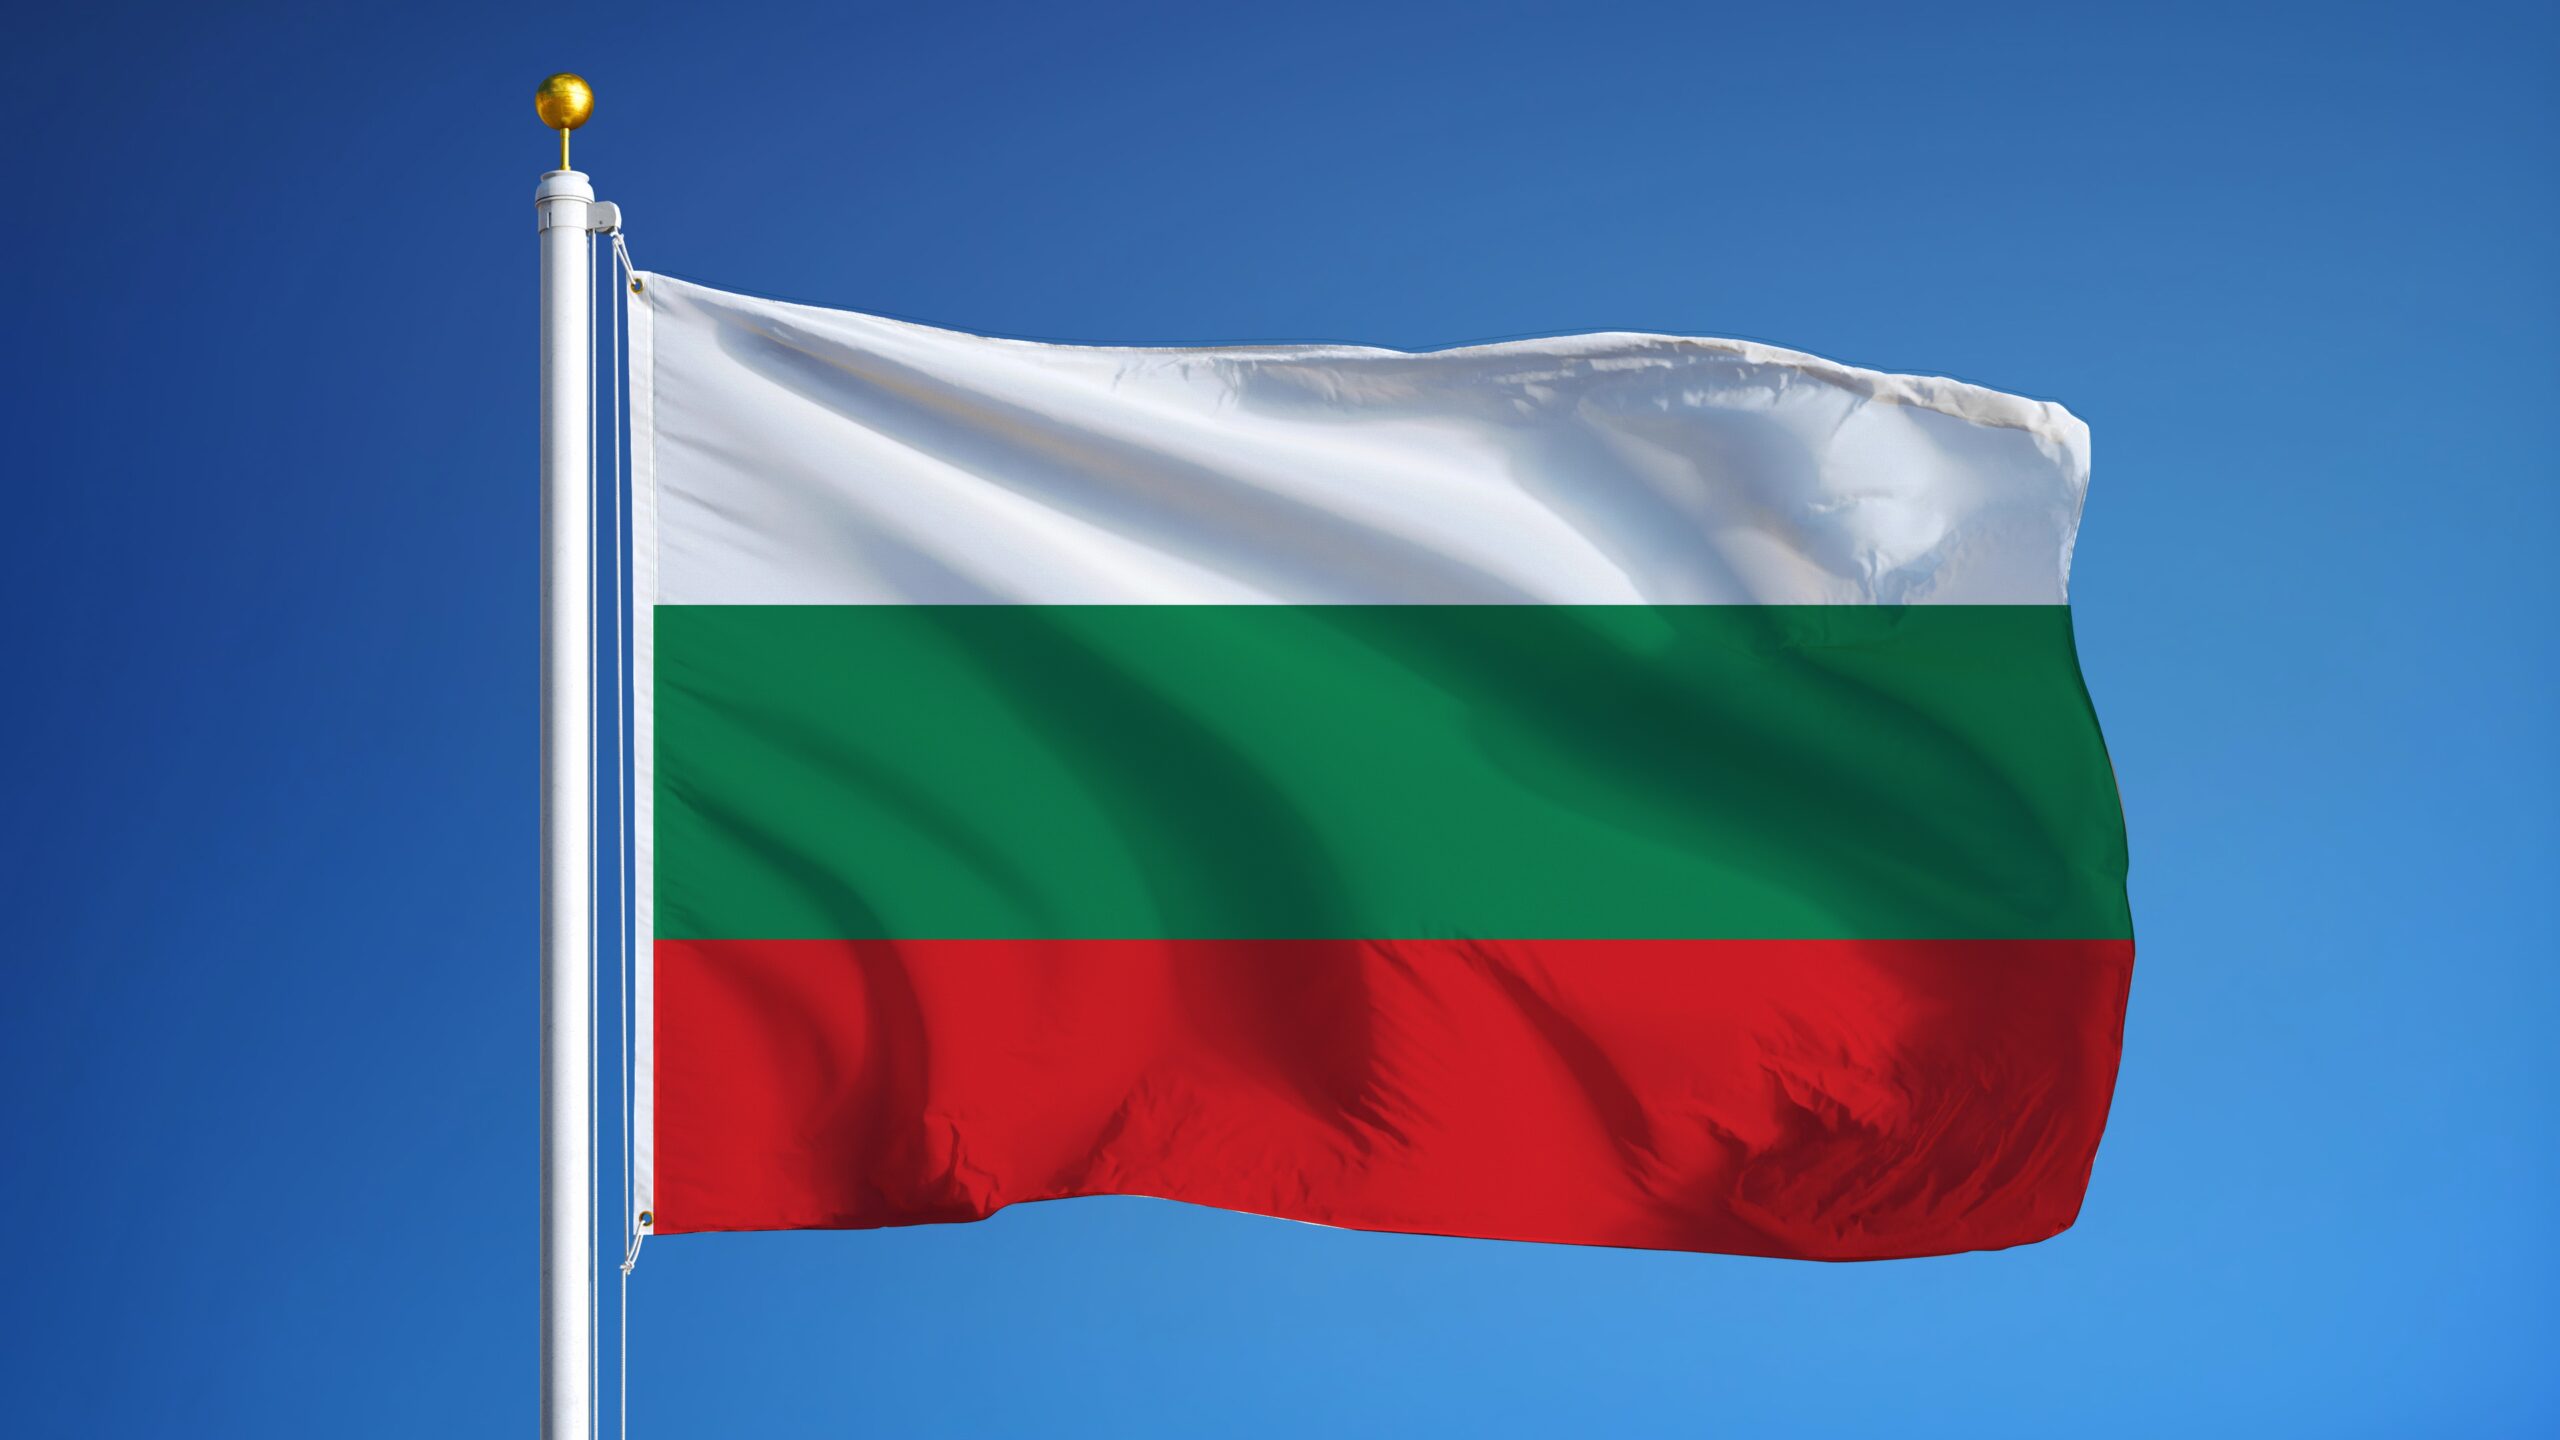 Bulgaristan’da otoyol uzunluğu son 12-13 yılda neredeyse ikiye katlandı